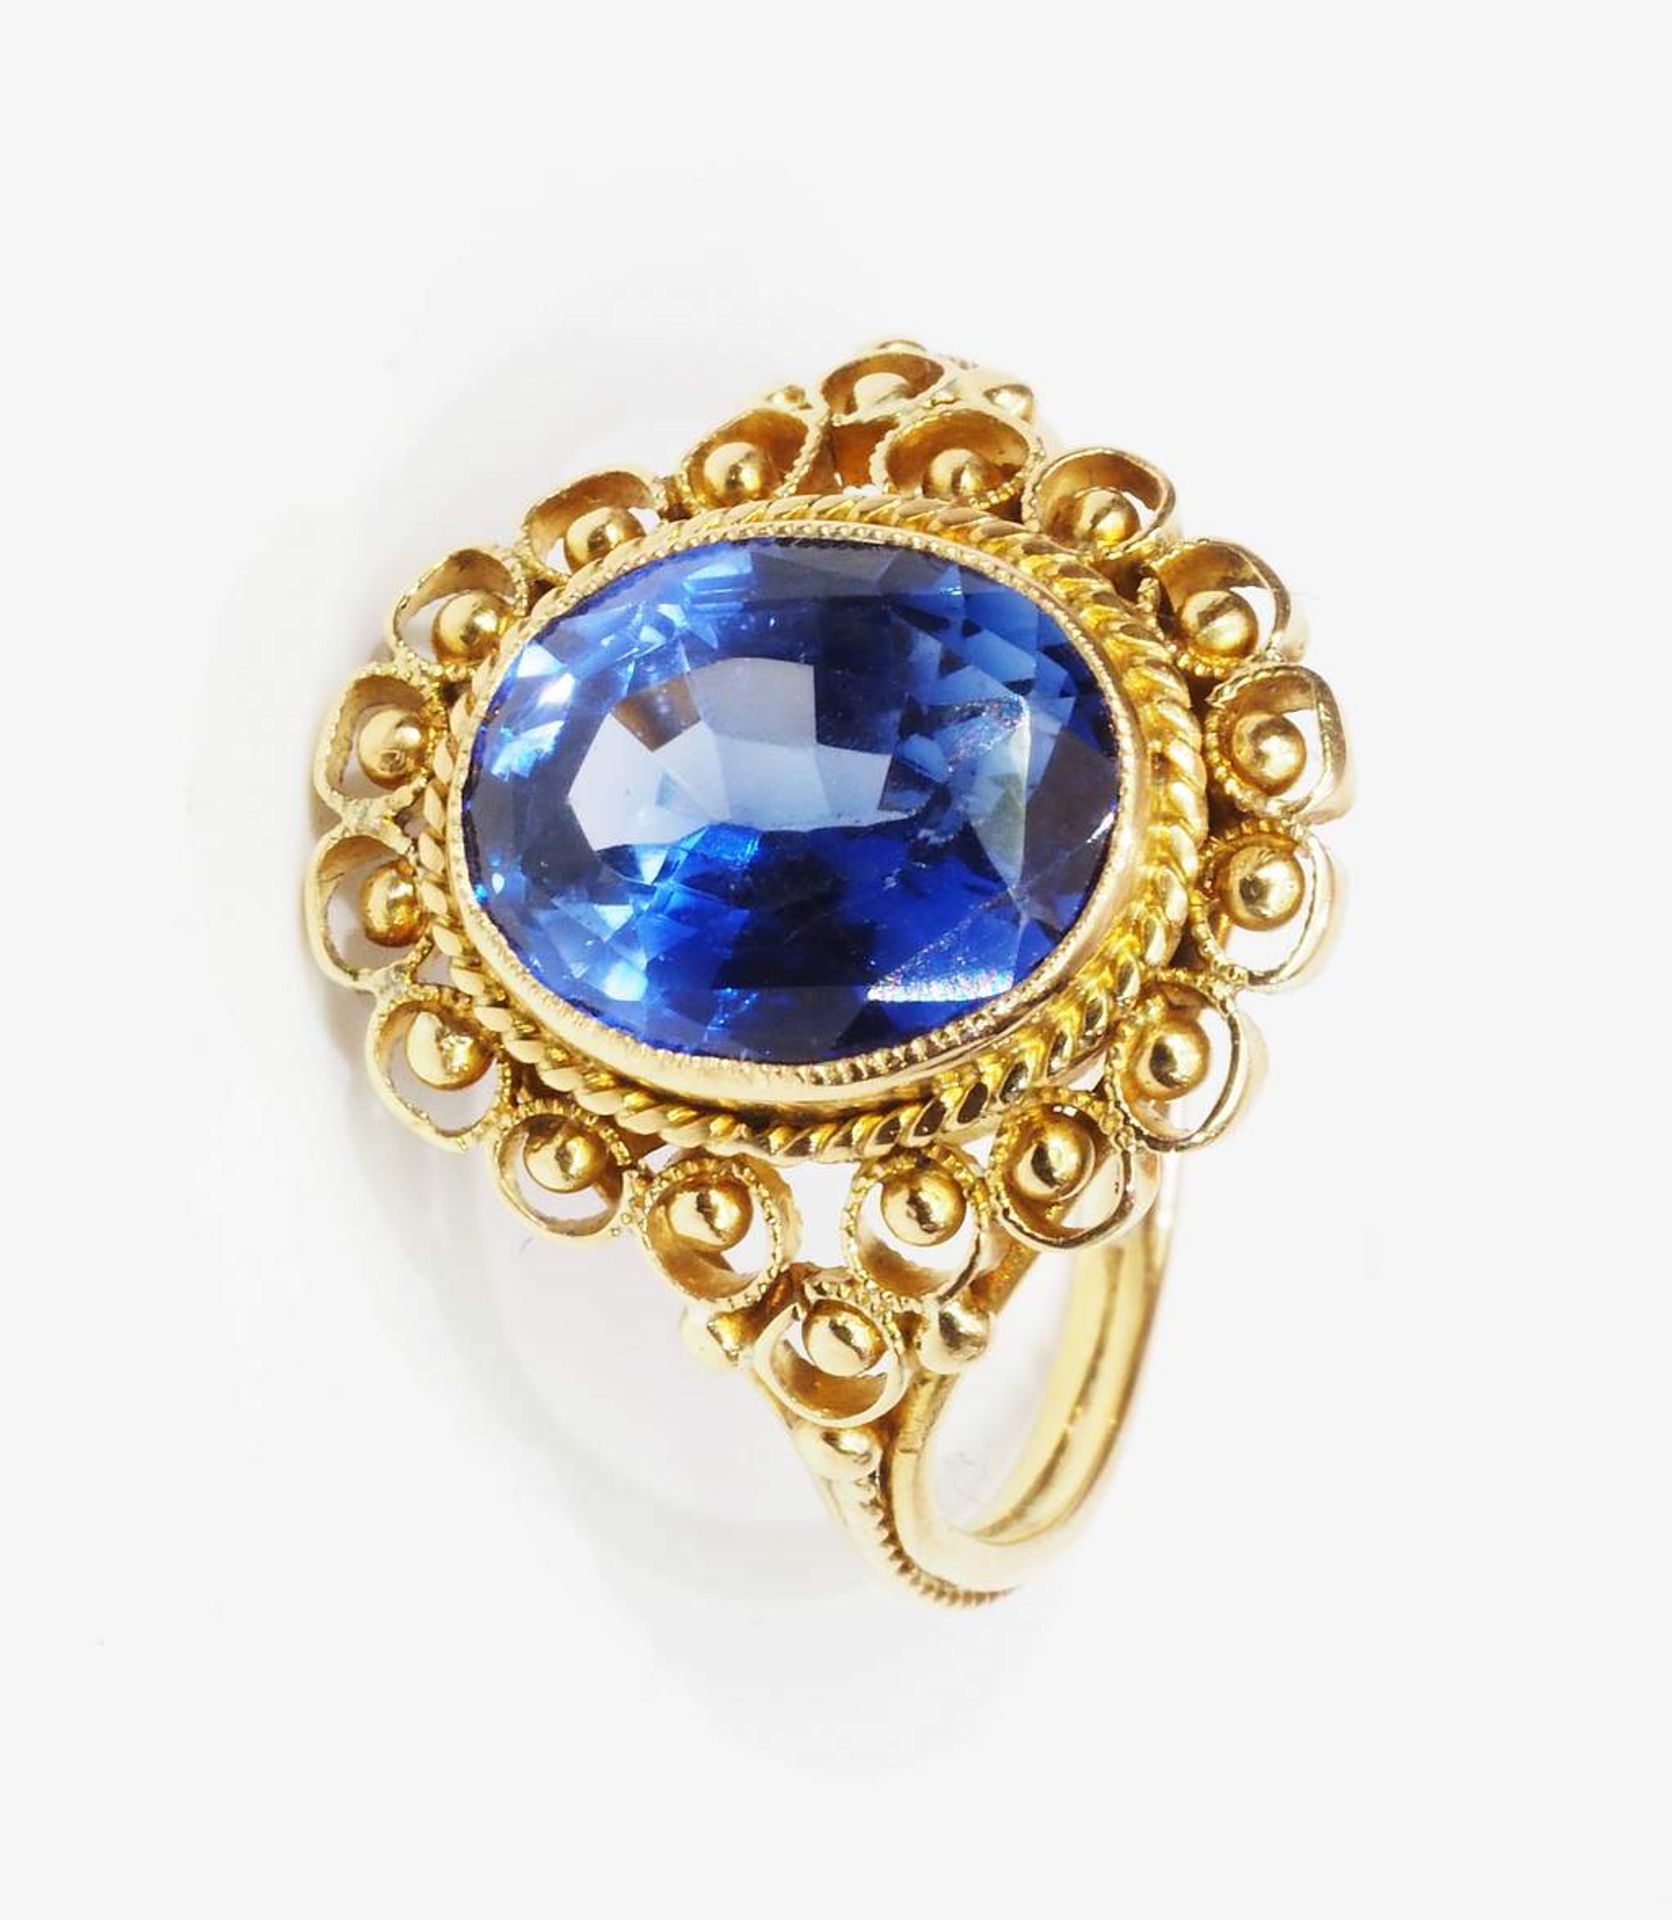 Ring mit Saphir, Fassung 750er Gelbgold, oval, facettiert, transparent, blau. - Bild 2 aus 7